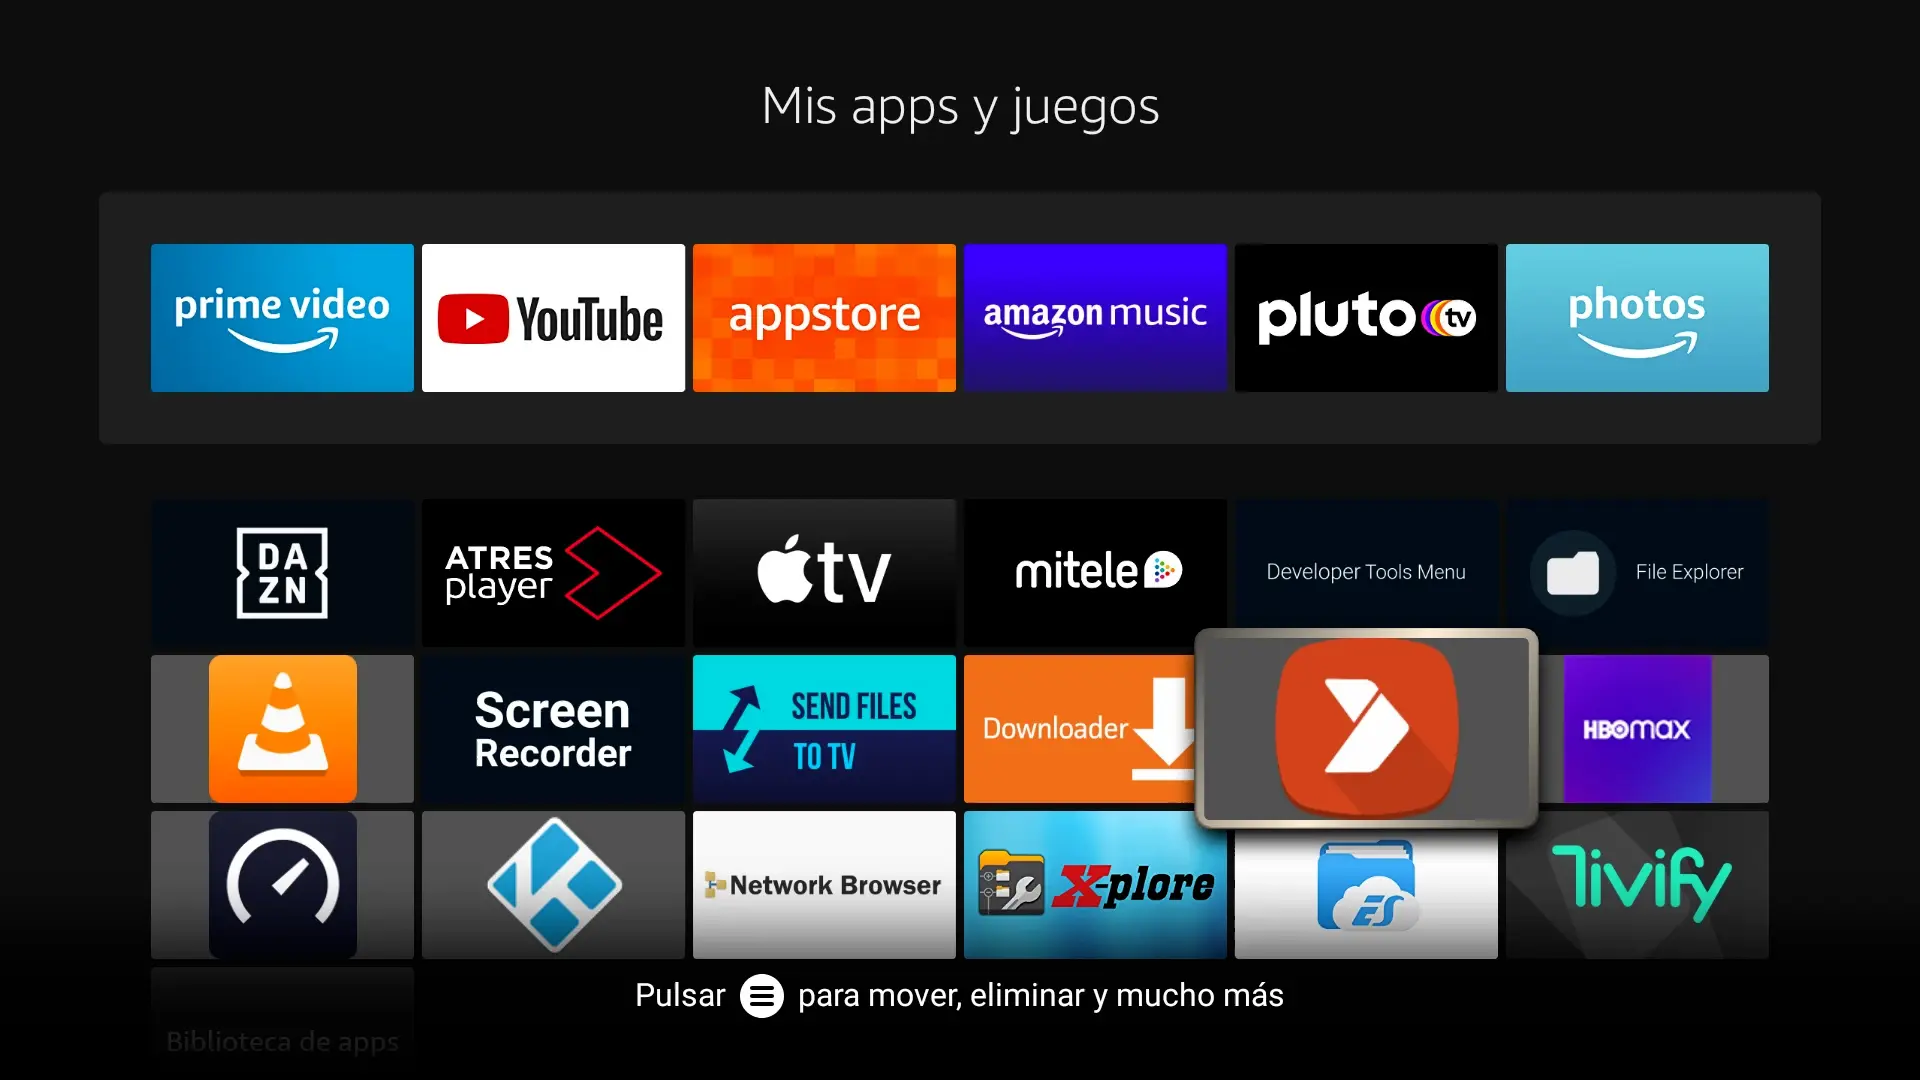 07 Botón Aptoide TV en Mis apps y juegos de Fire TV Stick